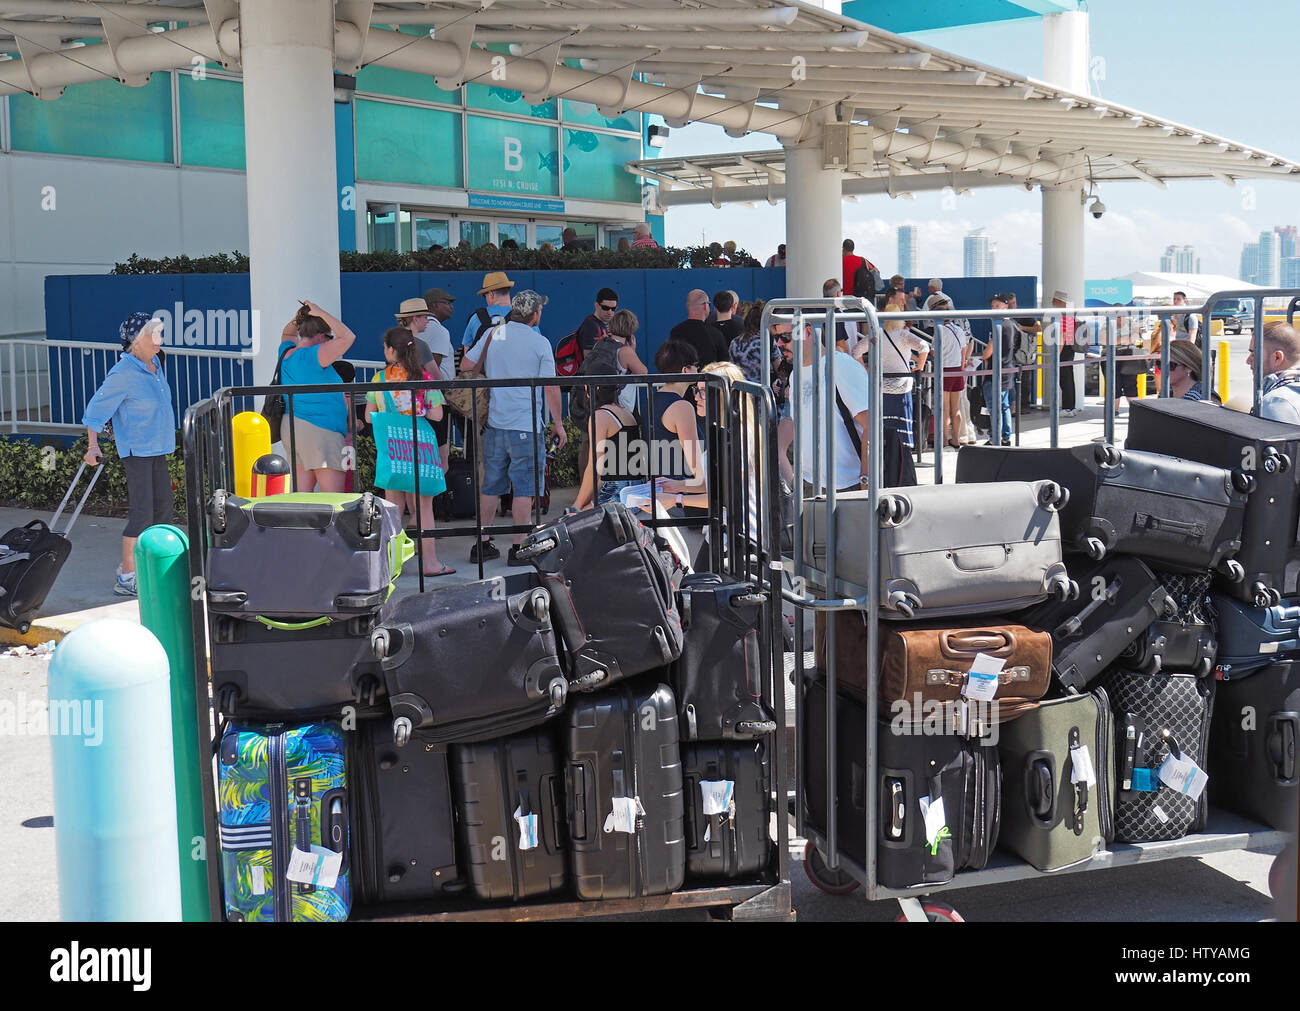 Gepäck eingecheckt für Kreuzfahrt im Hafen von Miami Stockfotografie - Alamy